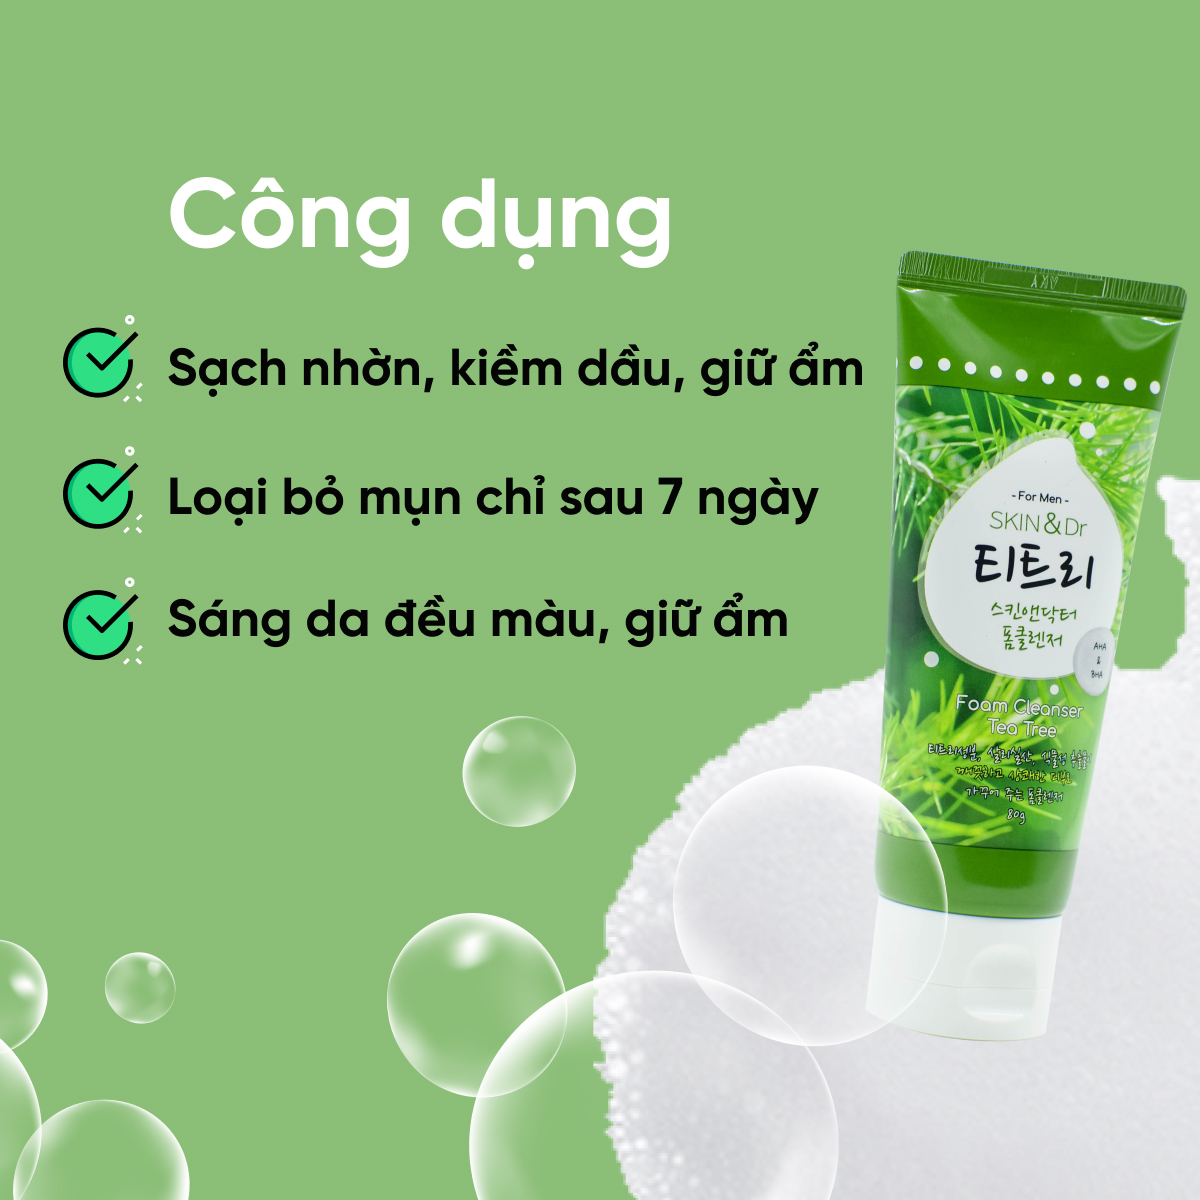 Sữa rửa mặt nam giảm mụn Skin&dr Tràm trà 80g - Cho da mụn, da dầu, dưỡng ẩm trắng da - 30Shine phân phối chính hãng